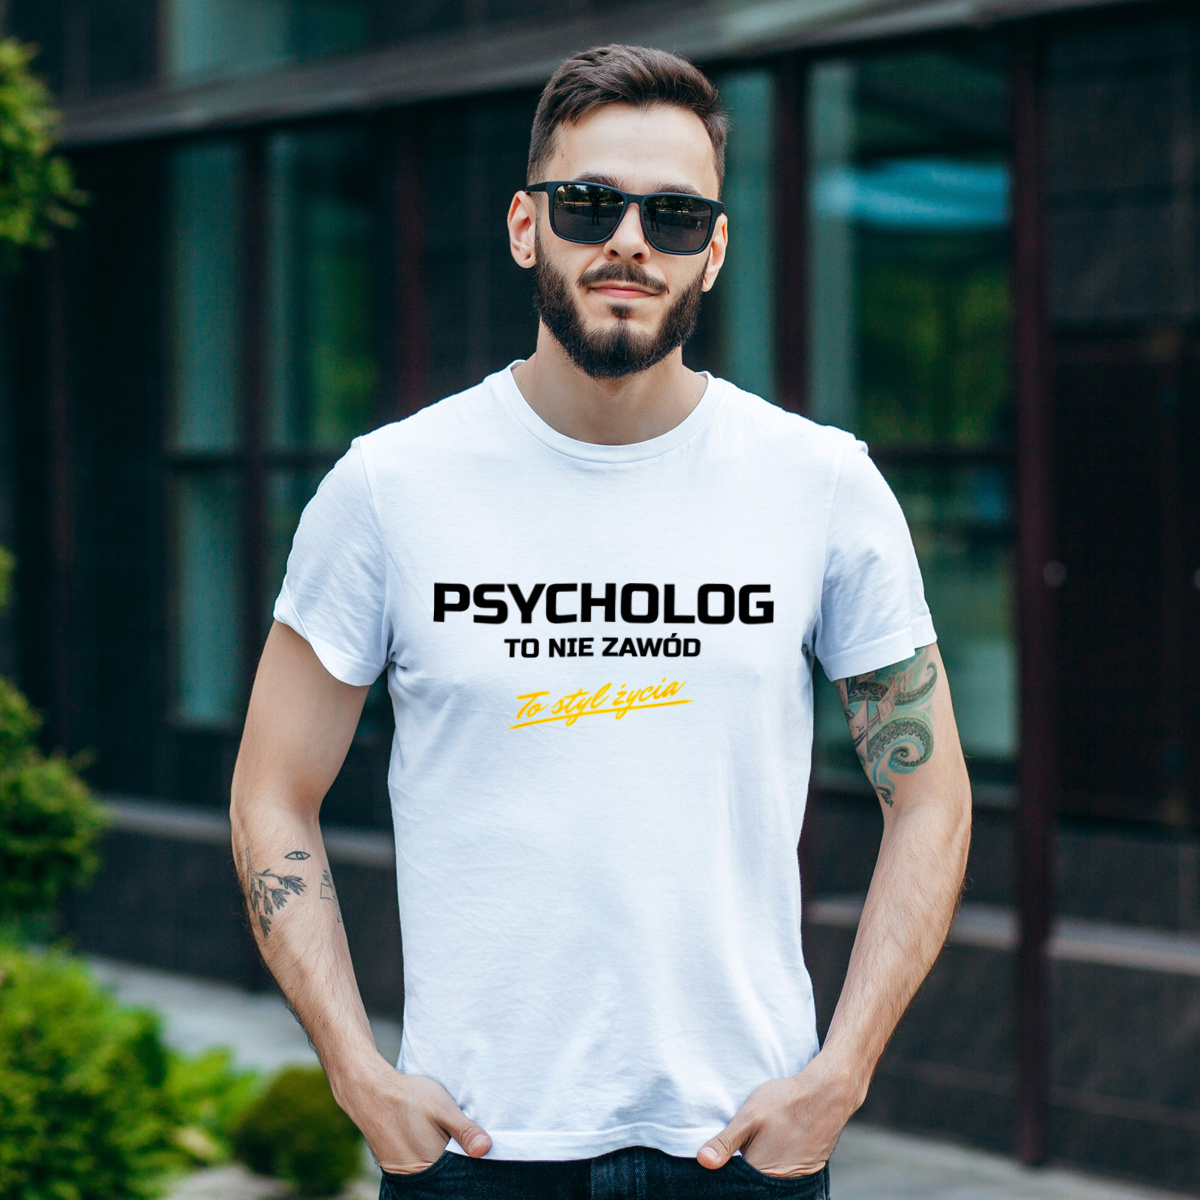 Psycholog To Nie Zawód - To Styl Życia - Męska Koszulka Biała